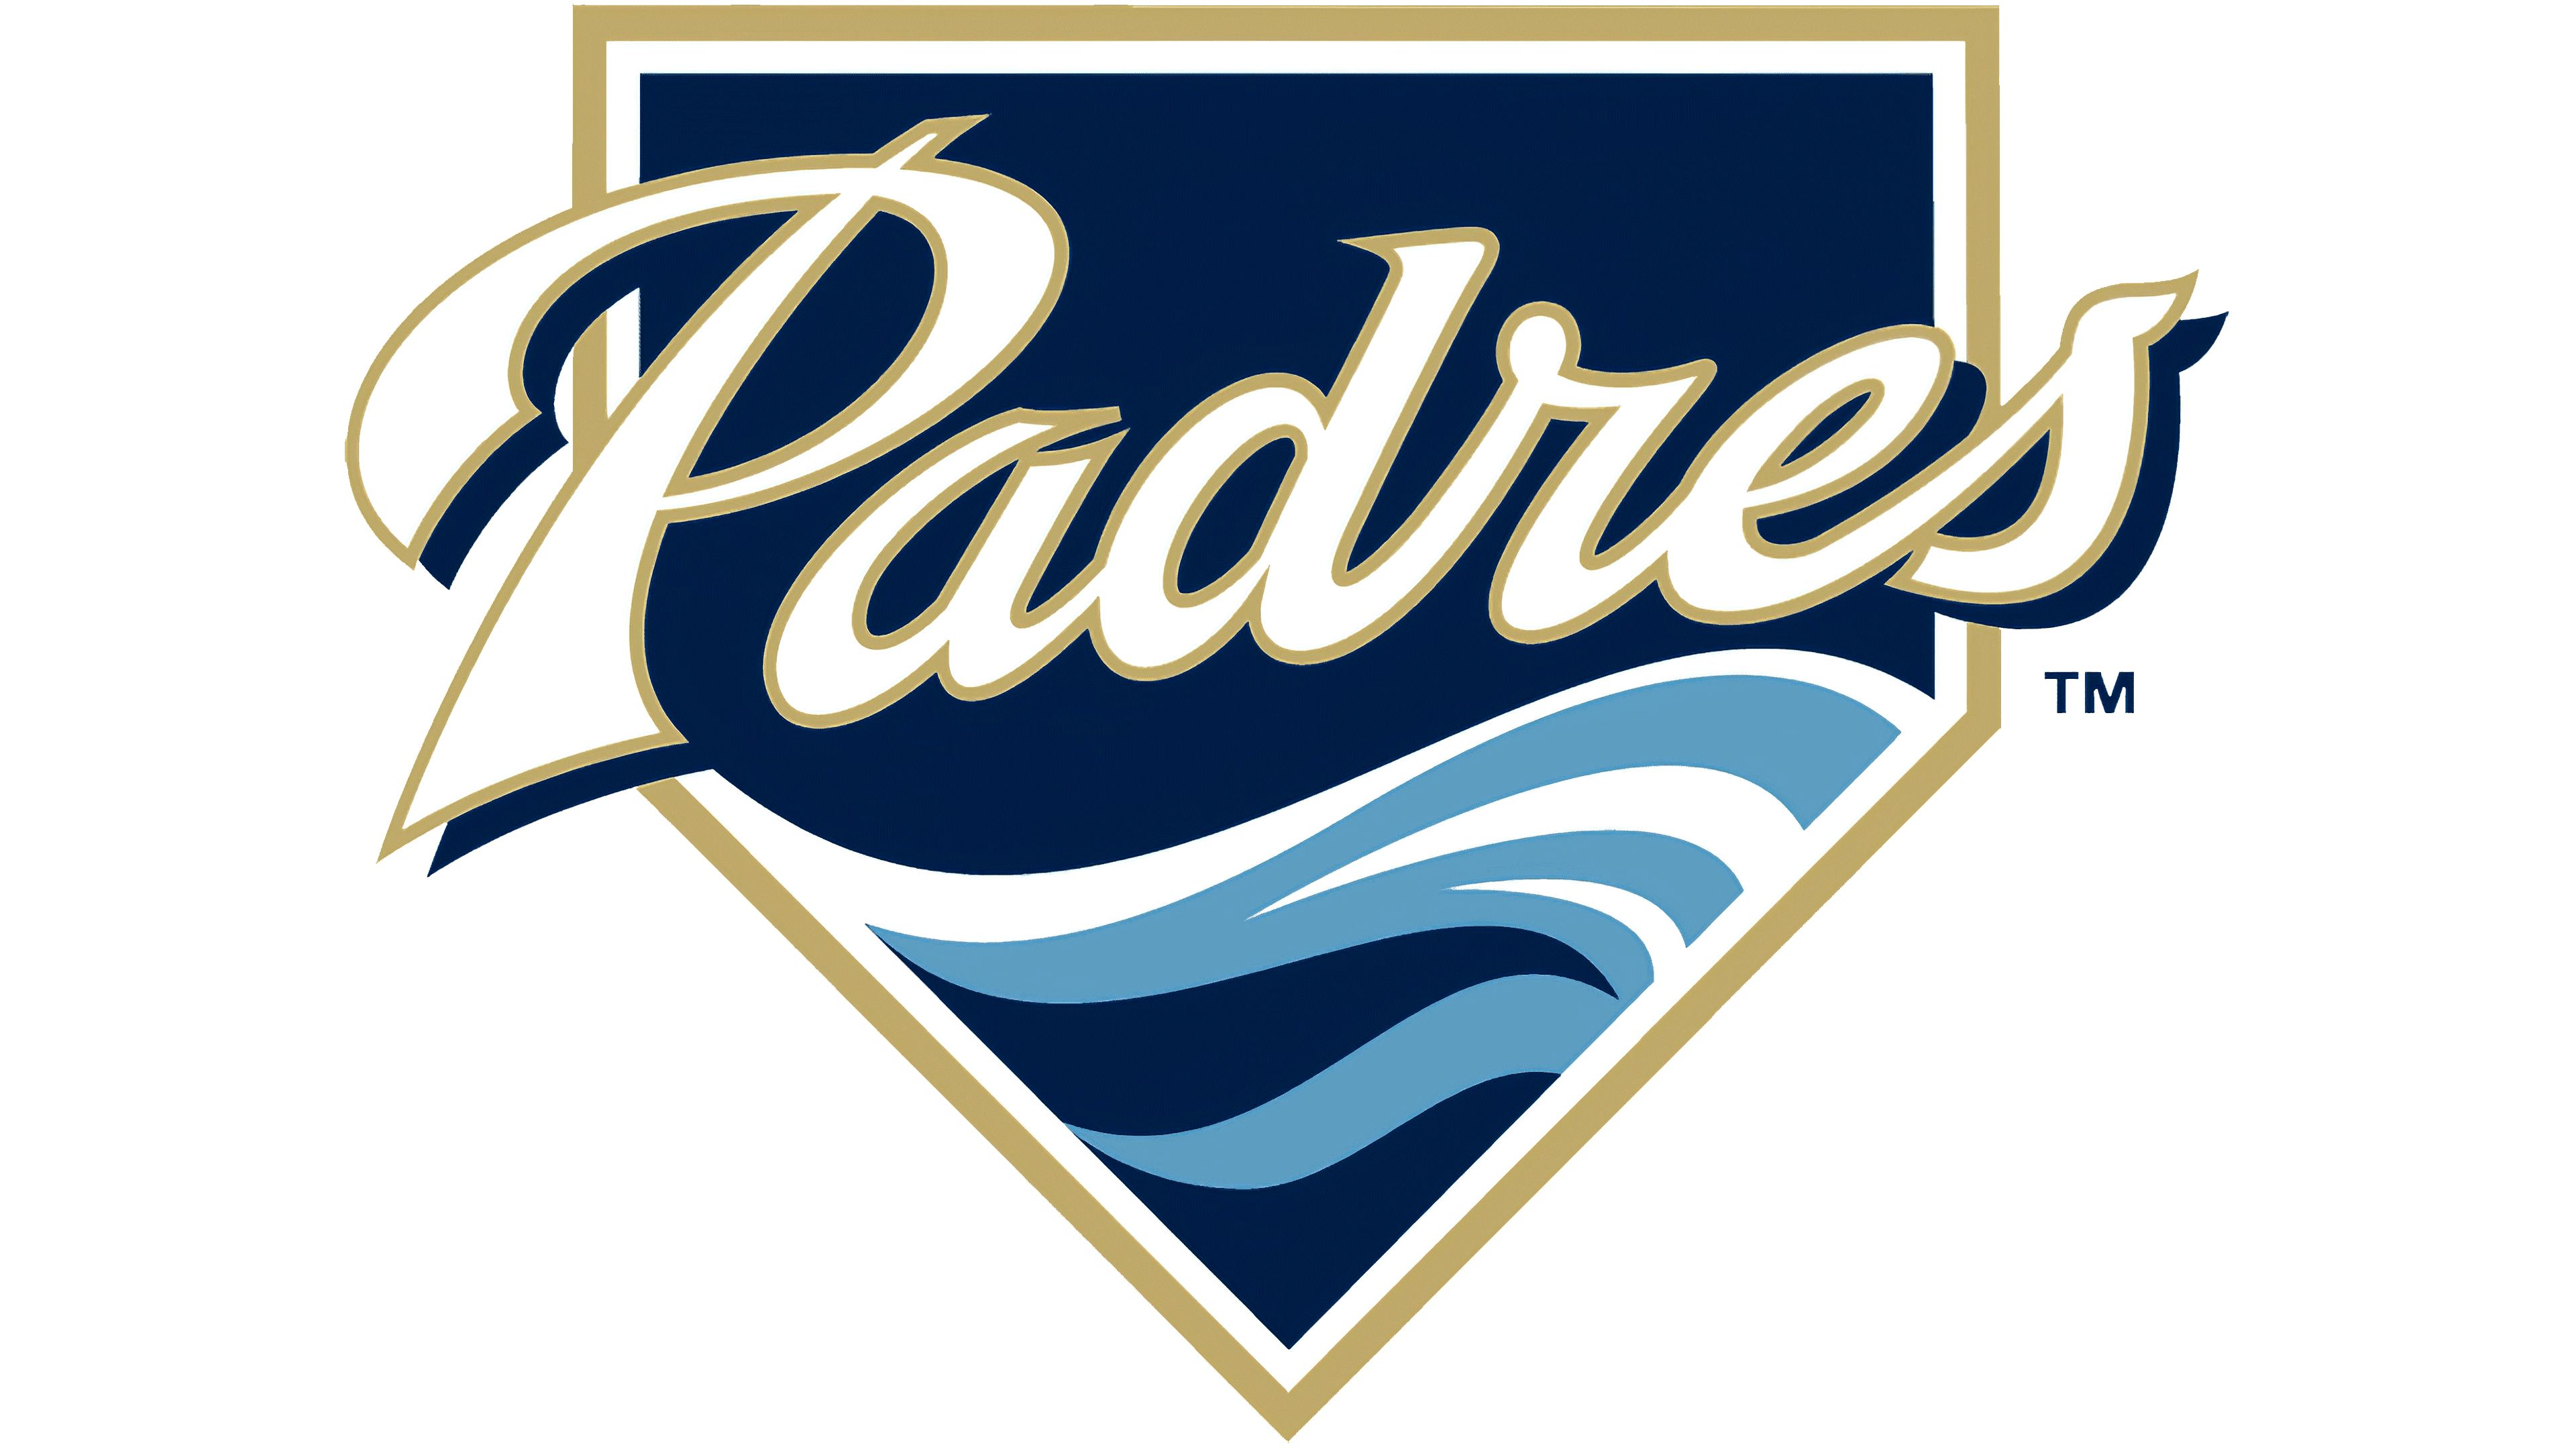 San Diego Padres Logoclip Art Logo Image for Free - Free Logo Image